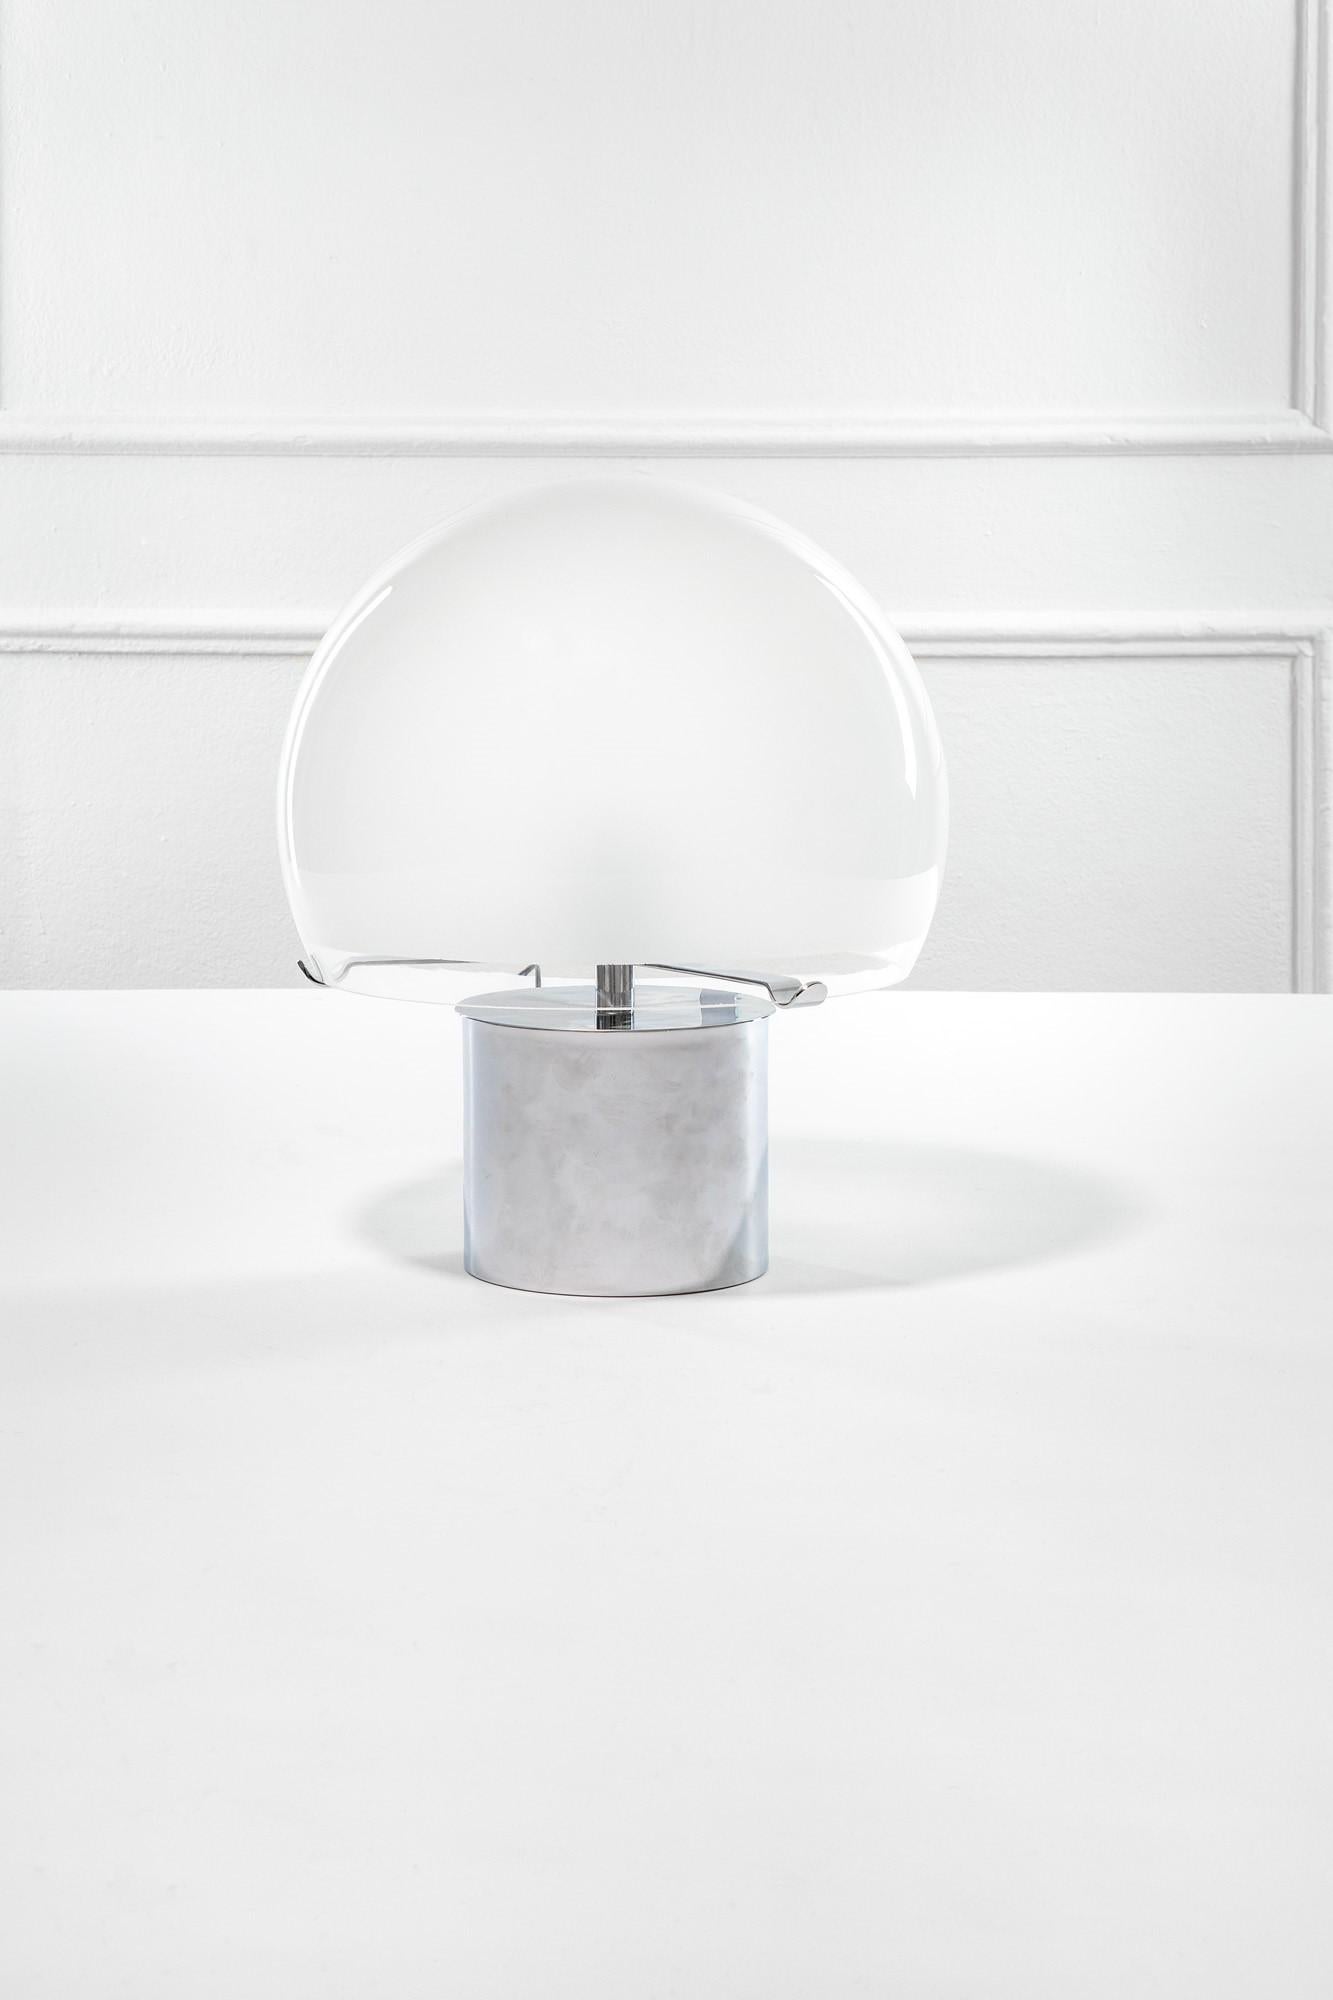 Luigi Caccia Dominioni - Lampe de table mod. LTA6 Porcino
Détails du produit
Laiton chromé poli, verre soufflé dépoli à l'intérieur avec bandeau transparent.
Production : Azucena, design à partir de 1967
Dimensions : h 42 cm, diamètre du